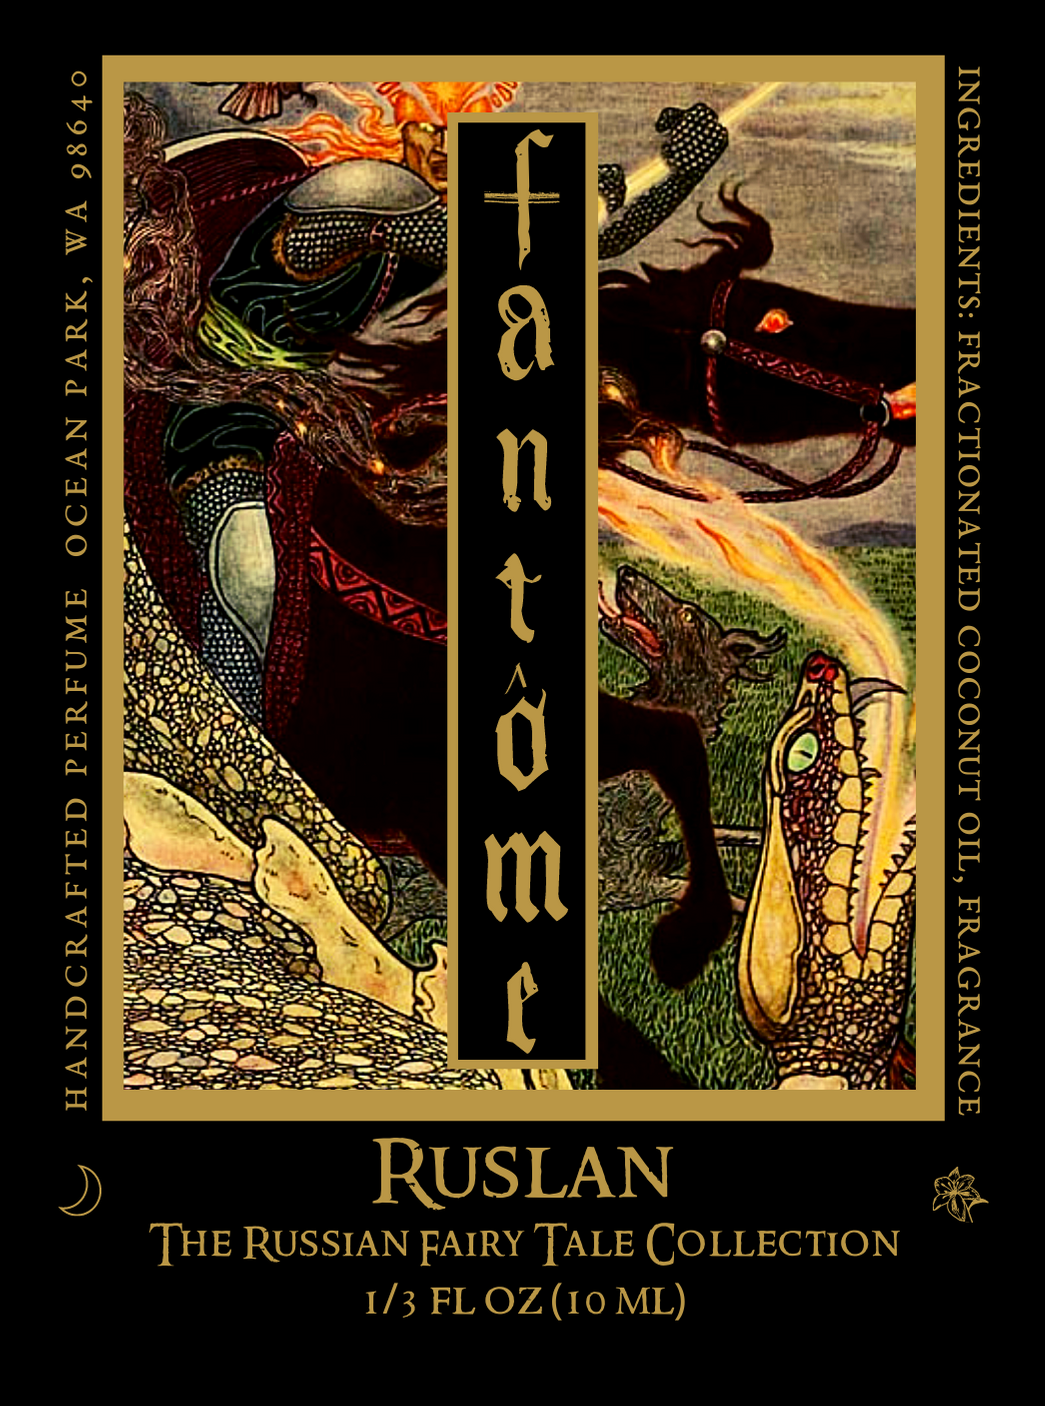 Ruslan Perfume Oil by Fantôme